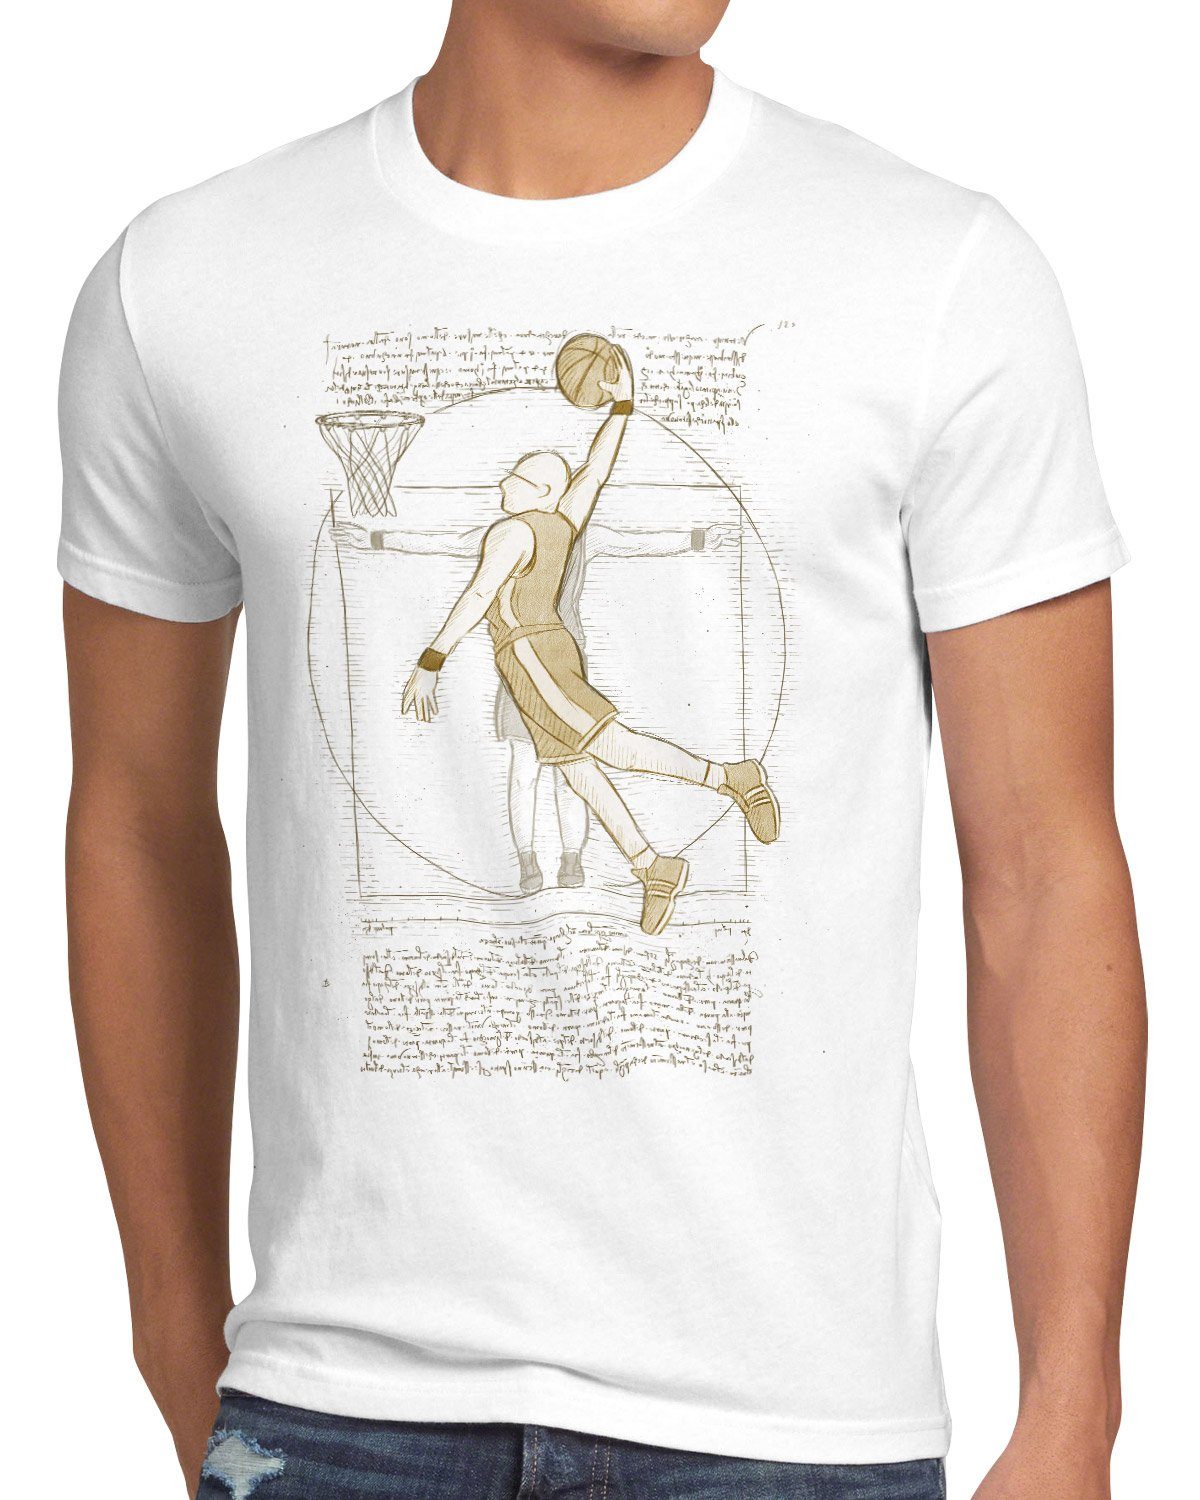 ballsport Basketballspieler Herren Print-Shirt T-Shirt mensch style3 weiß vinci da Vitruvianischer